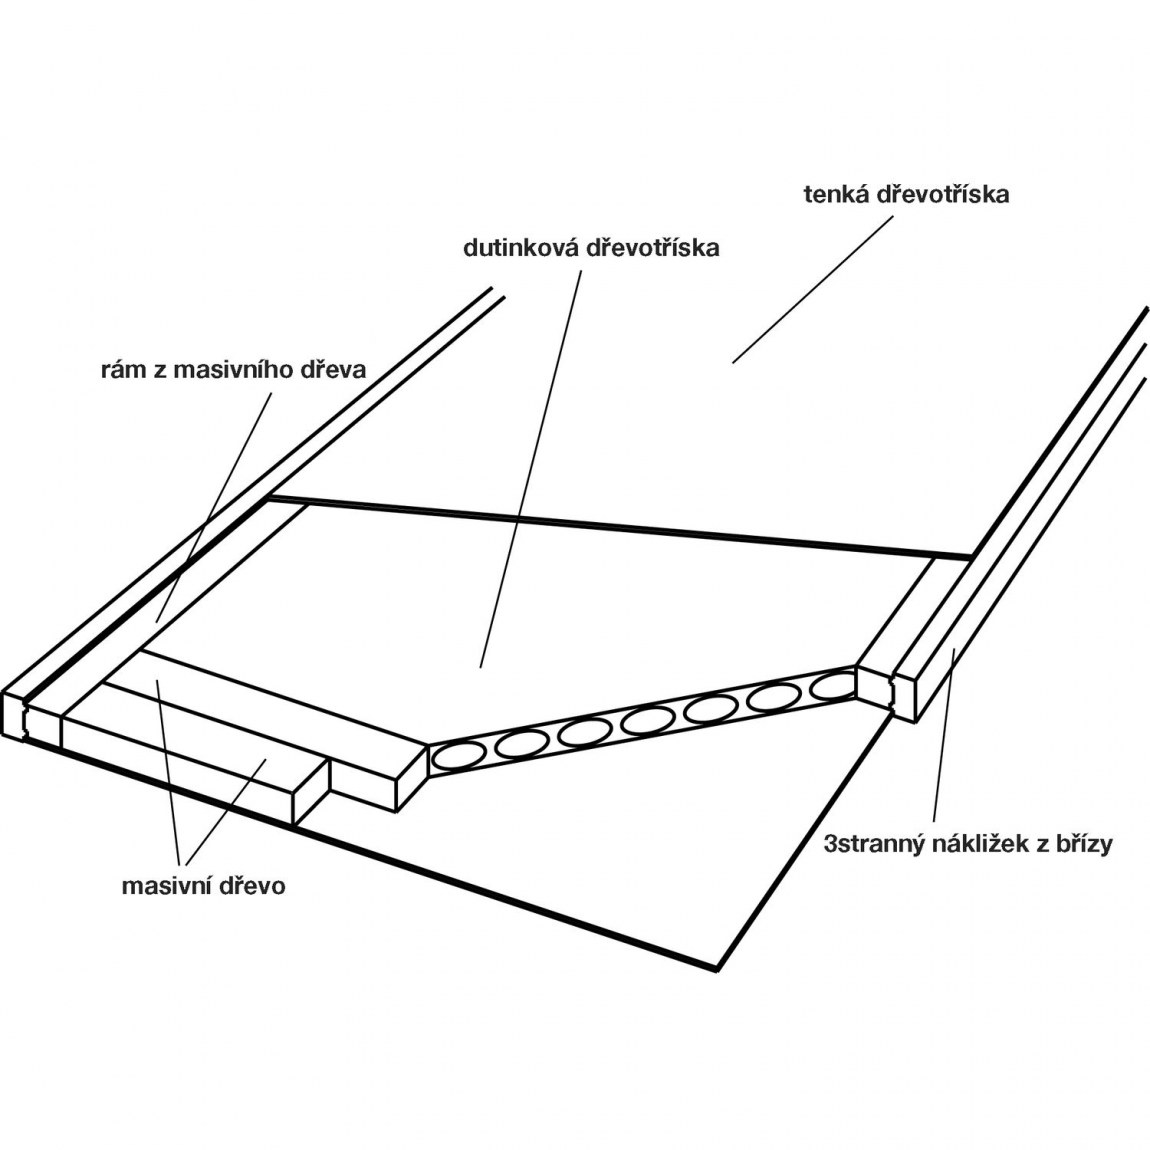 Dveřní polotovar Optimal RS, nákližek bříza - šířka 900 mm výška 2030 mm - Dílna - Outdoor Stavební potřeby